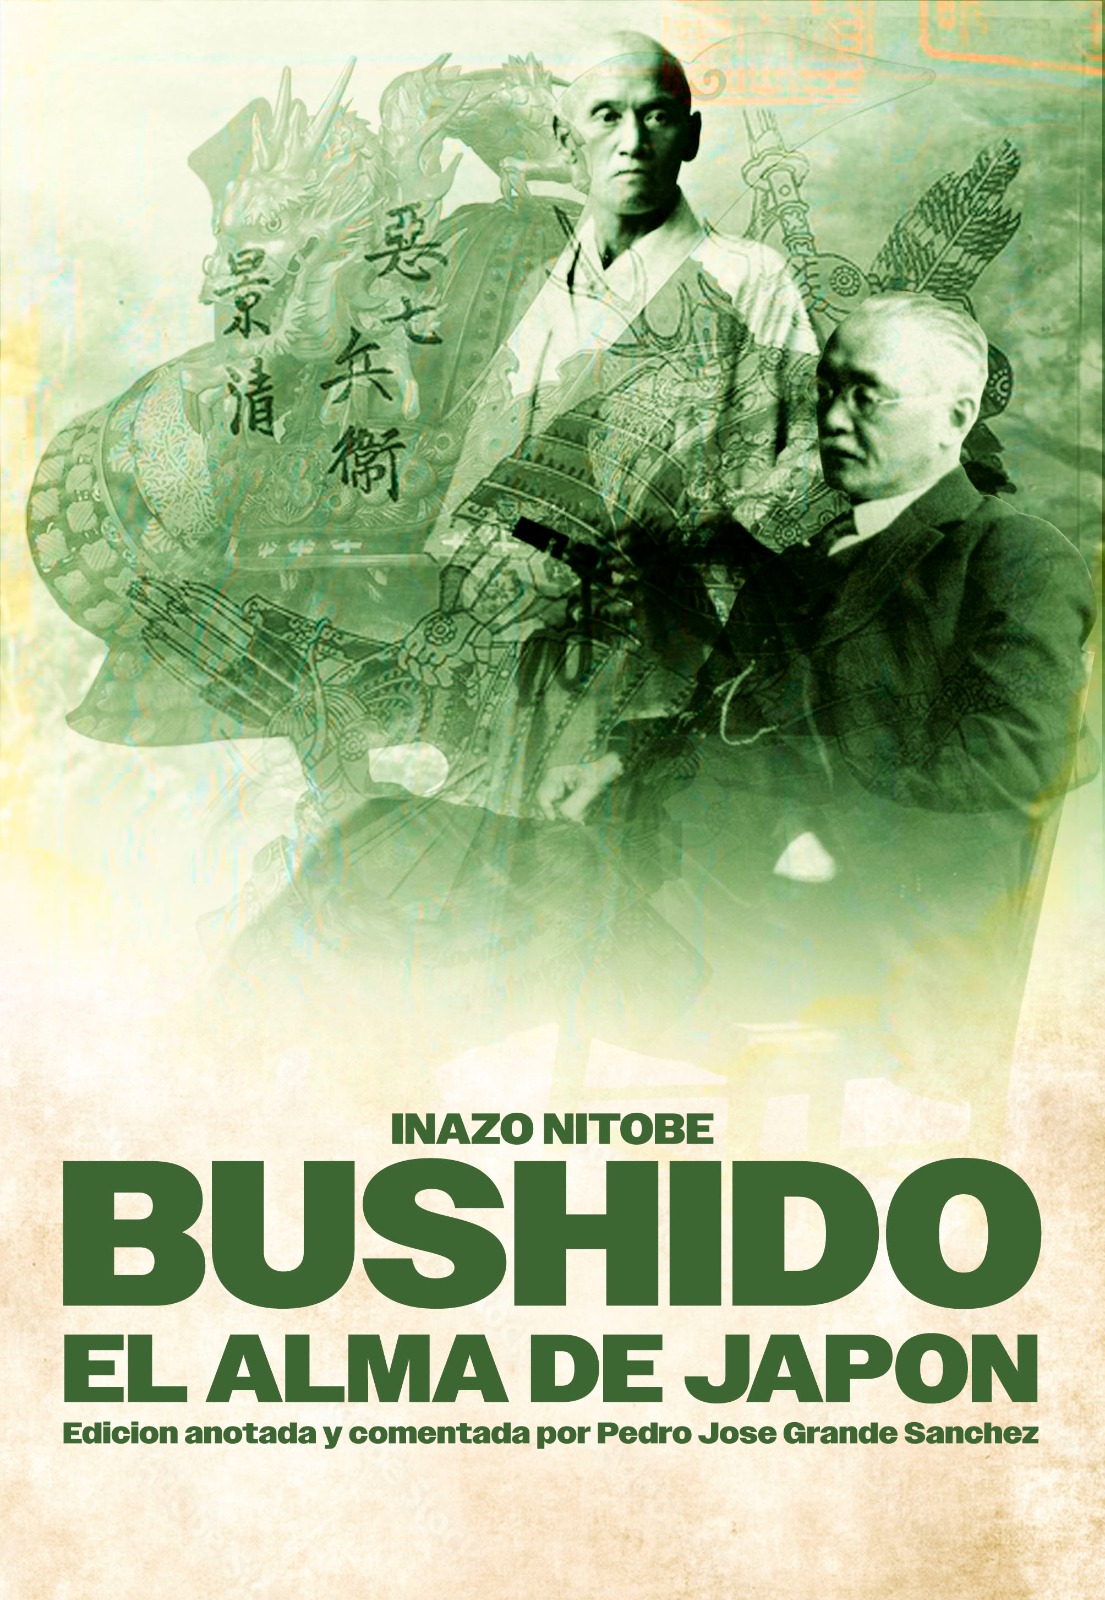 Imagen de portada del libro Bushido